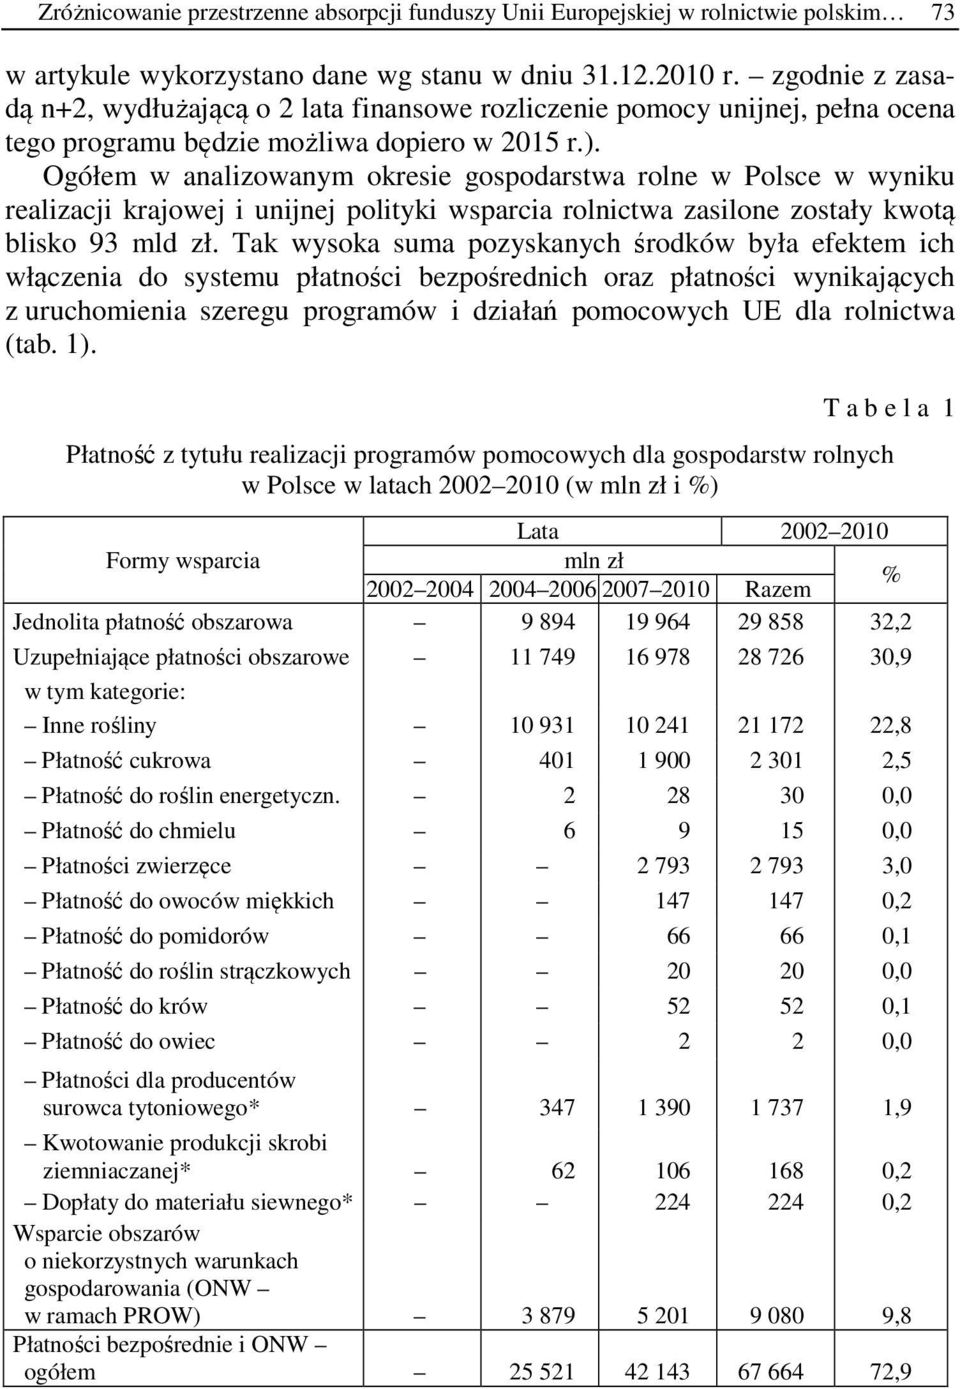 Ogółem w analizowanym okresie gospodarstwa rolne w Polsce w wyniku realizacji krajowej i unijnej polityki wsparcia rolnictwa zasilone zostały kwotą blisko 93 mld zł.